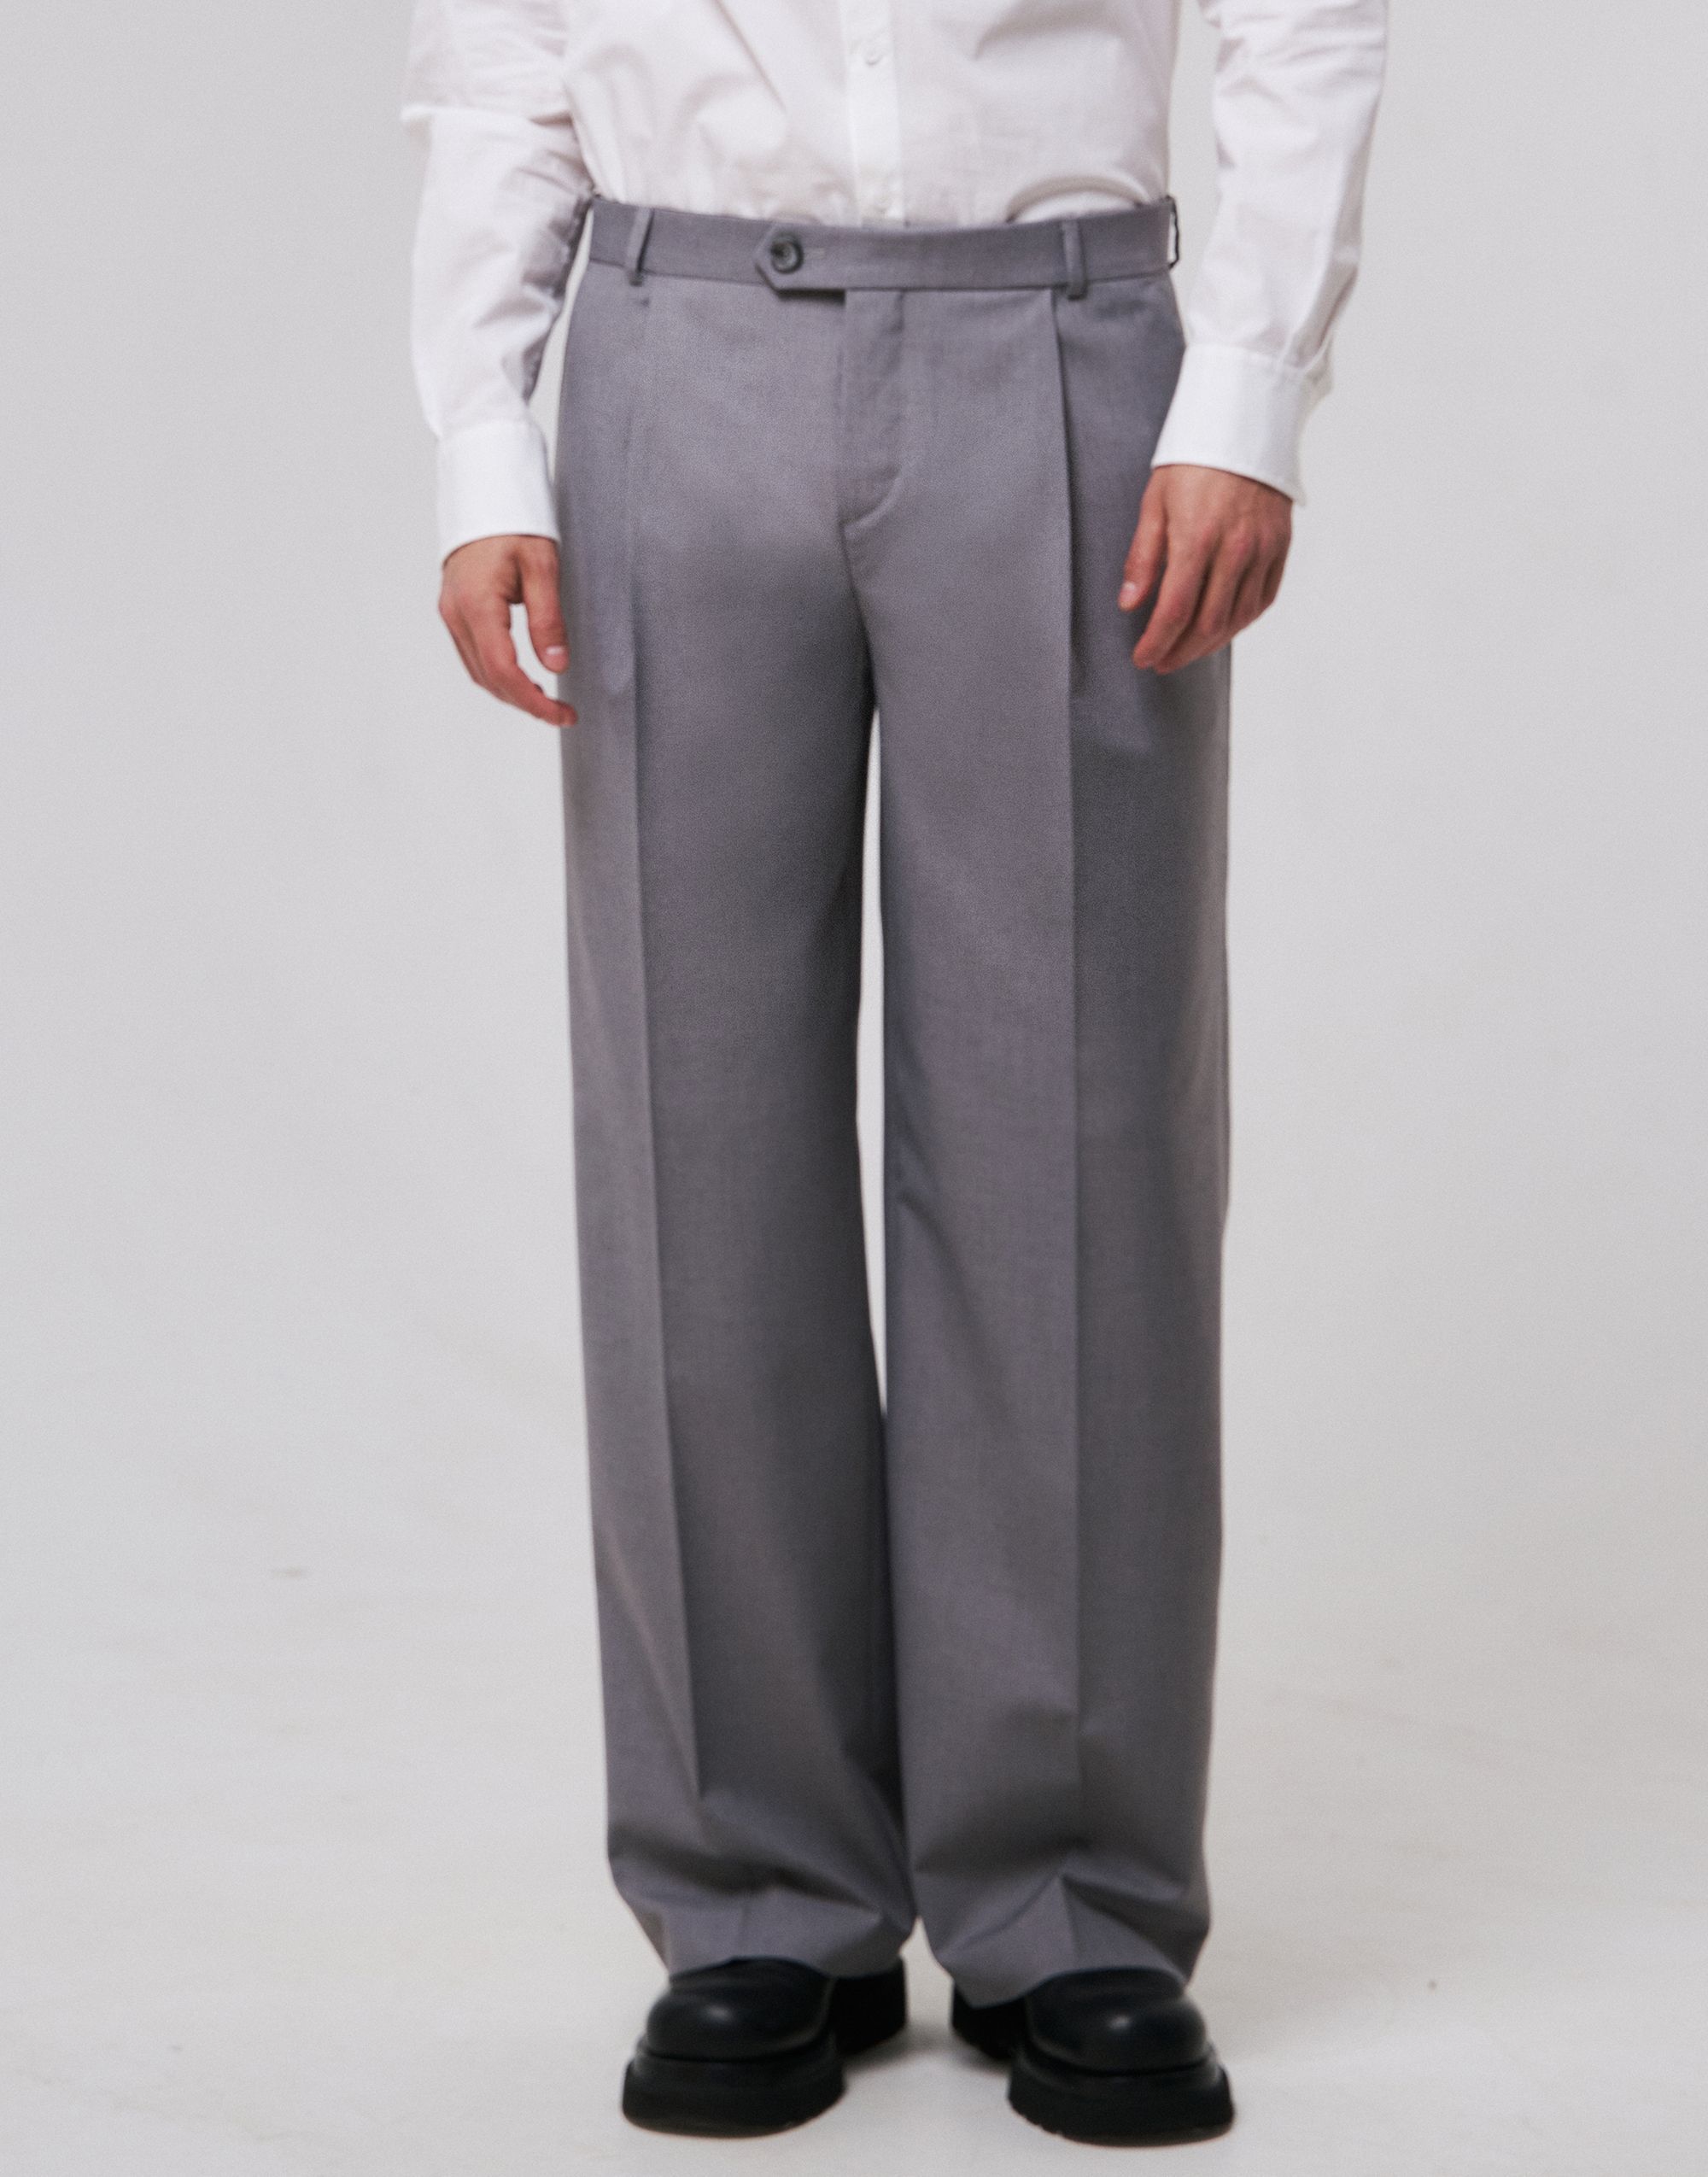 Men's trousers, pattern №1113